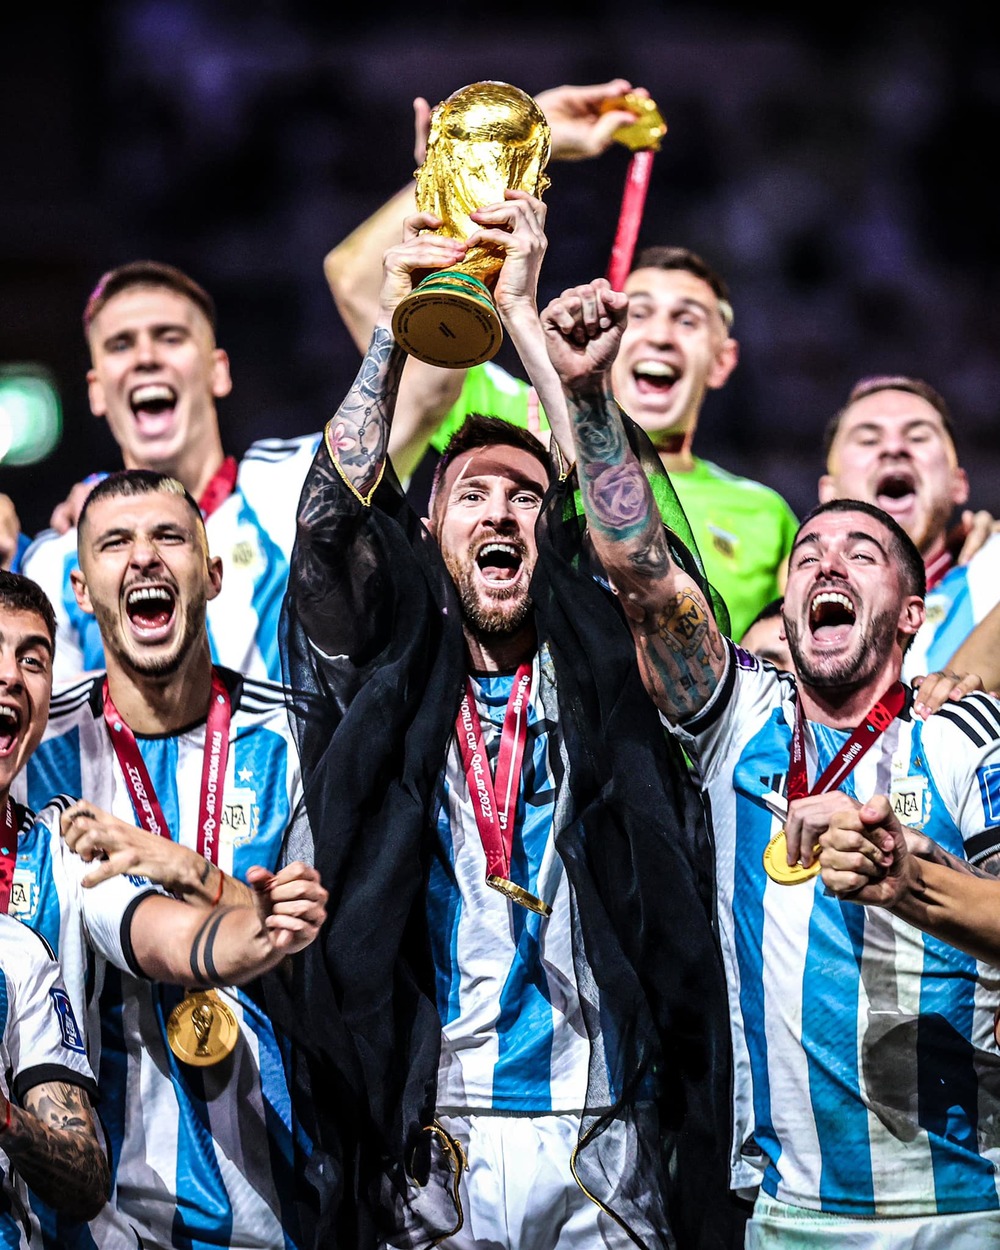 Cùng xem lại những khoảnh khắc tuyệt vời khi Messi cùng đội tuyển Argentina đăng quang tại World Cup. Đó là một trong những kỳ tích lớn nhất của bóng đá thế giới!